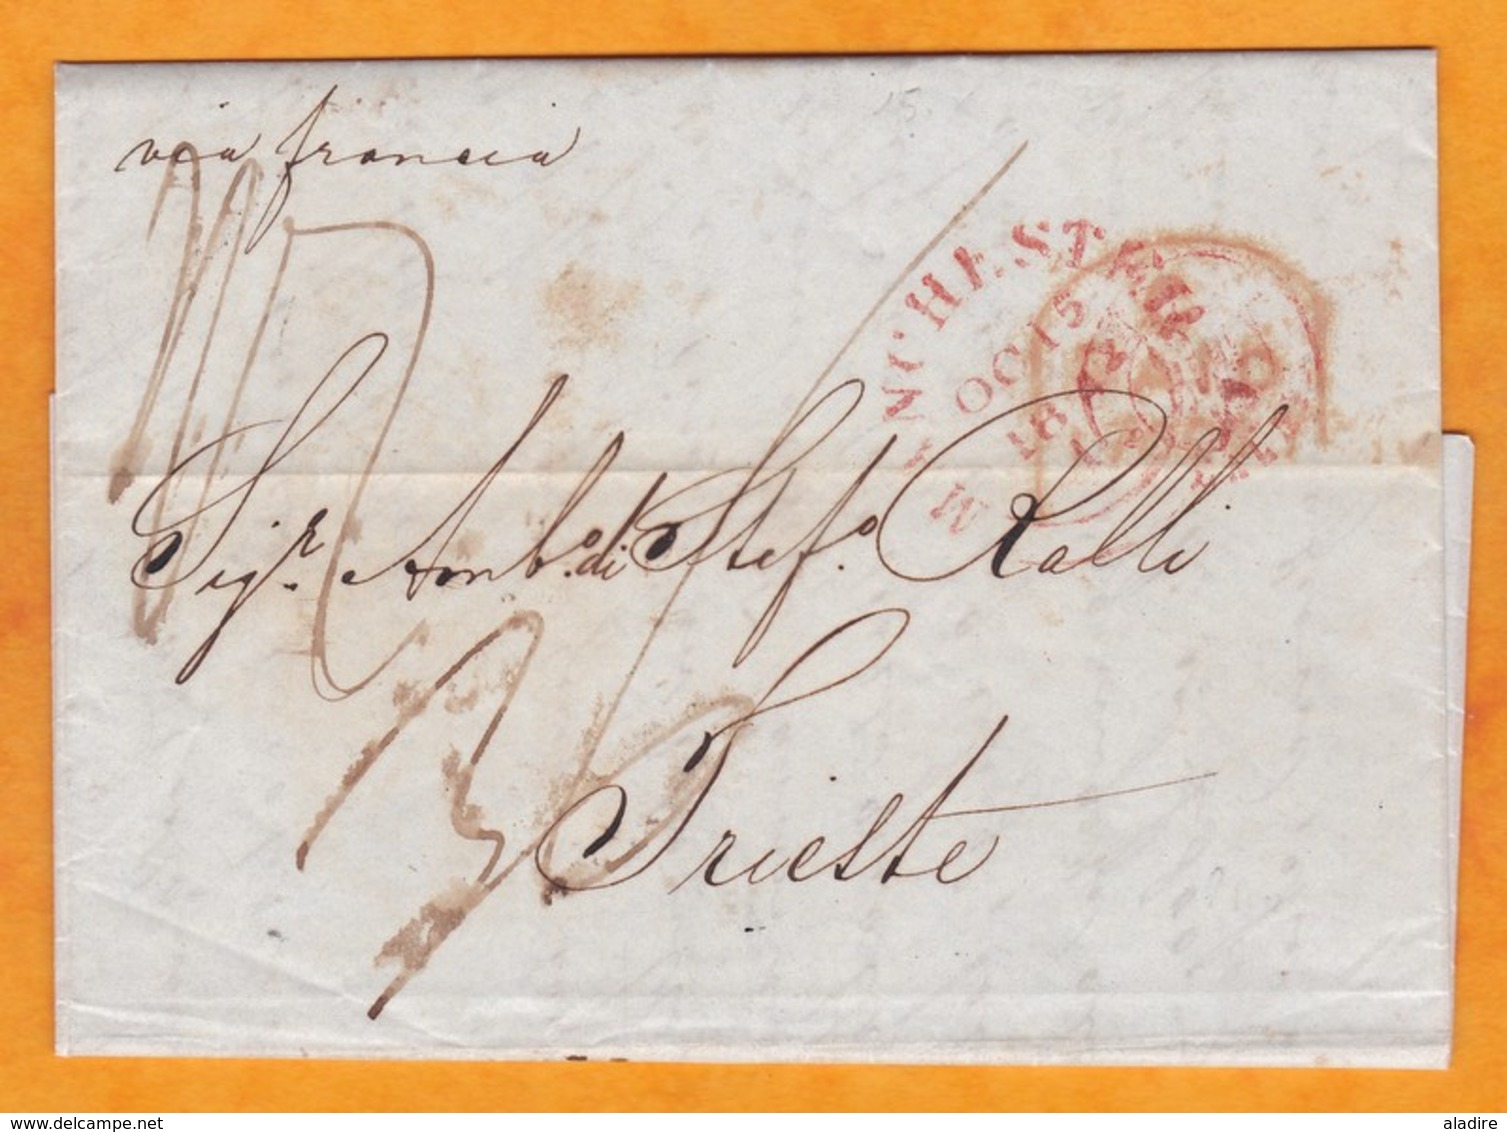 1842 - QV - Lettre Pliée Avec Correspondance En Italien De Manchester Vers Trieste, Autriche / Italie Via Calais, France - Marcophilie